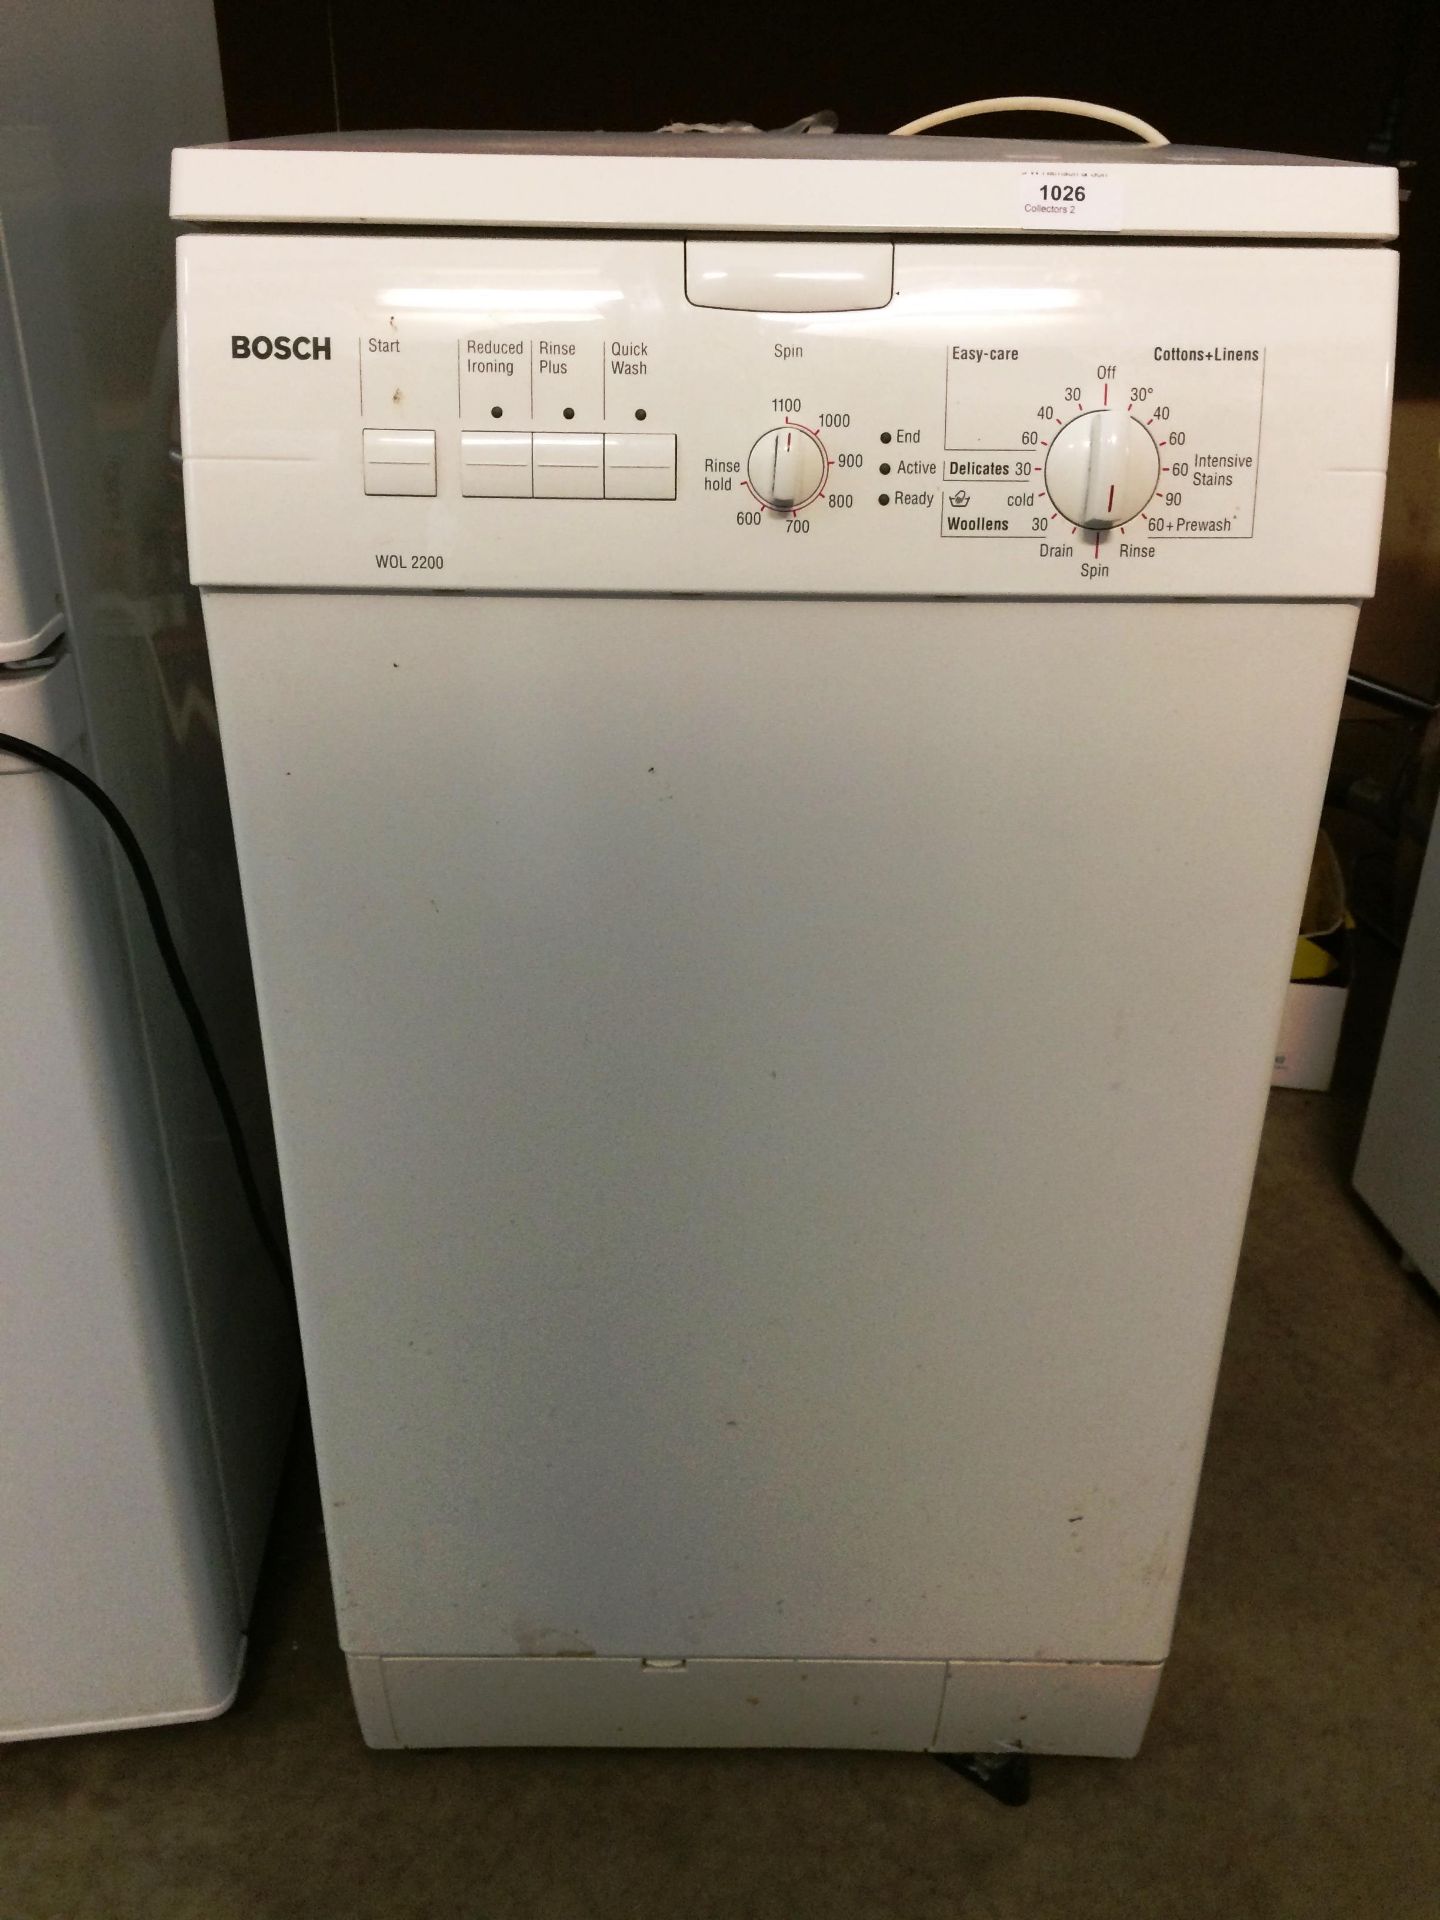 A Bosch WOL2200 top loading automatic washing machine